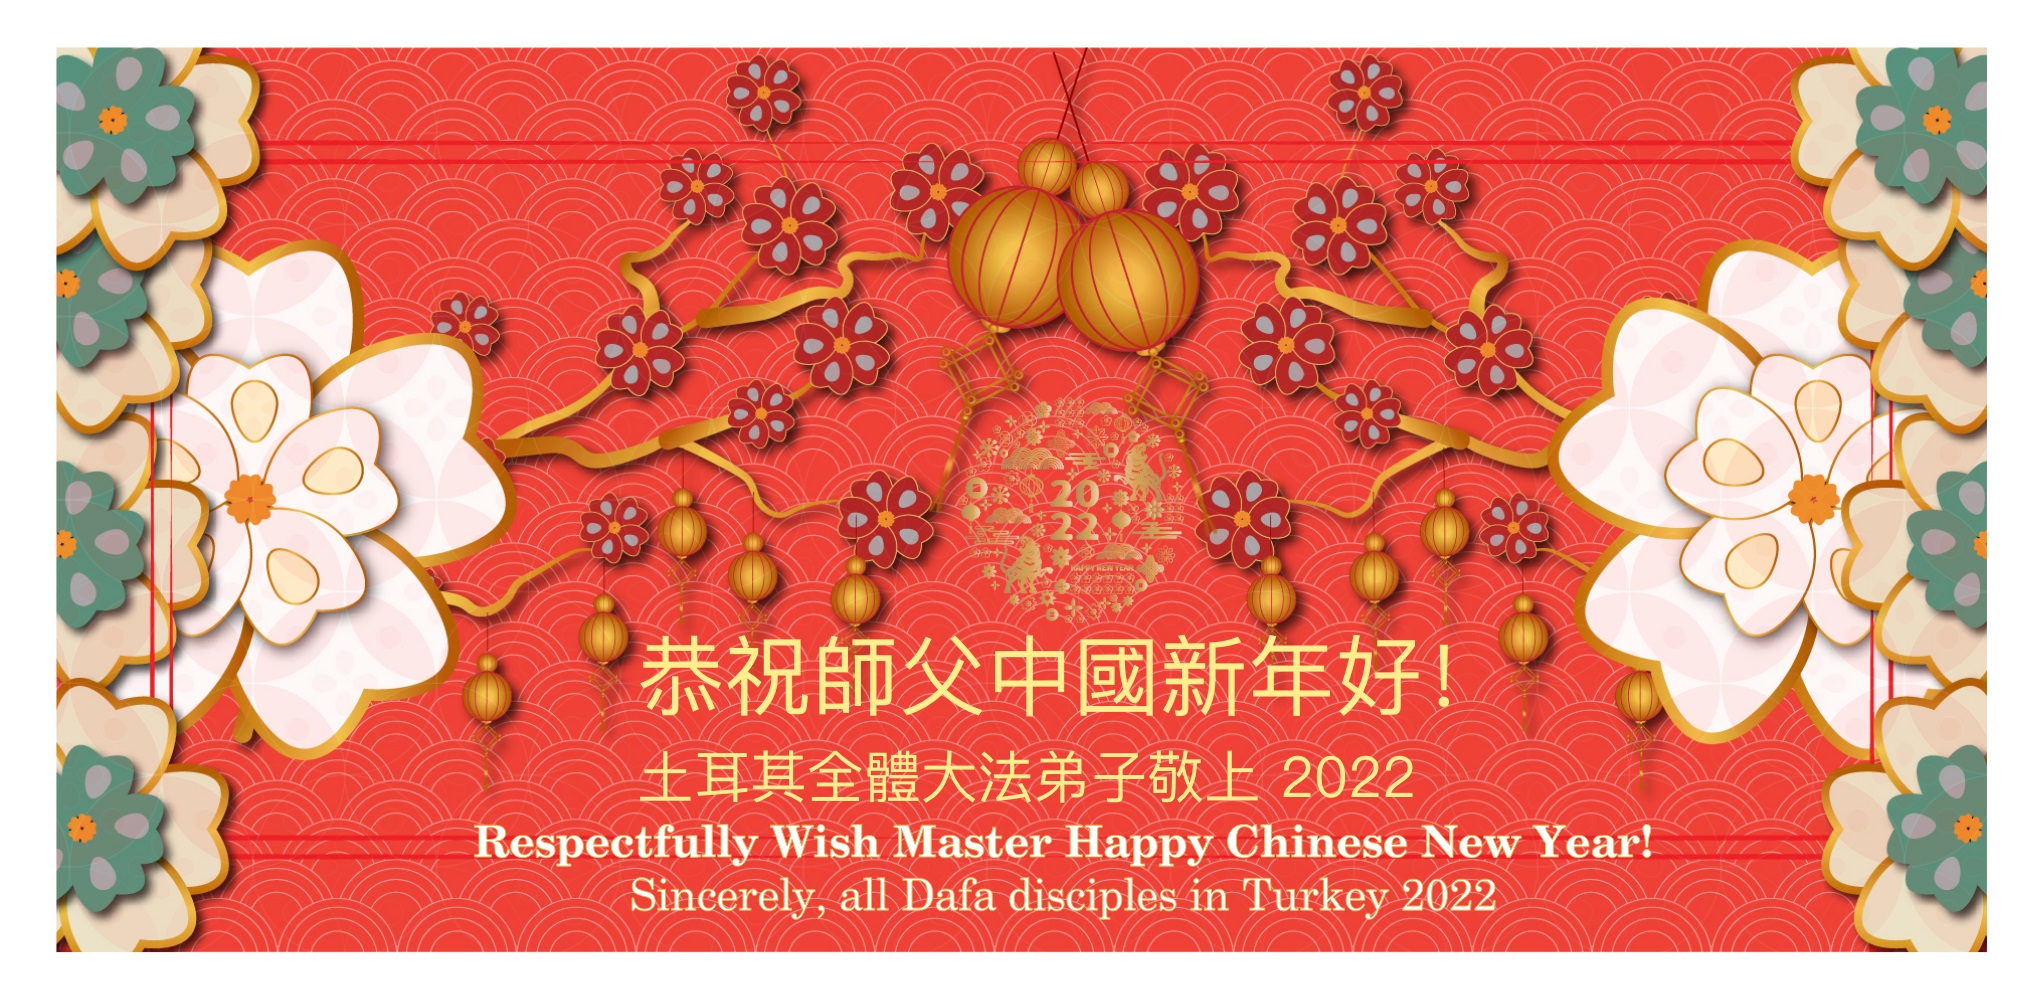 Image for article Türkiye'deki Uygulayıcılar, Saygıdeğer Shifu'nun 2022 Çin Yeni Yılını Kutluyor!